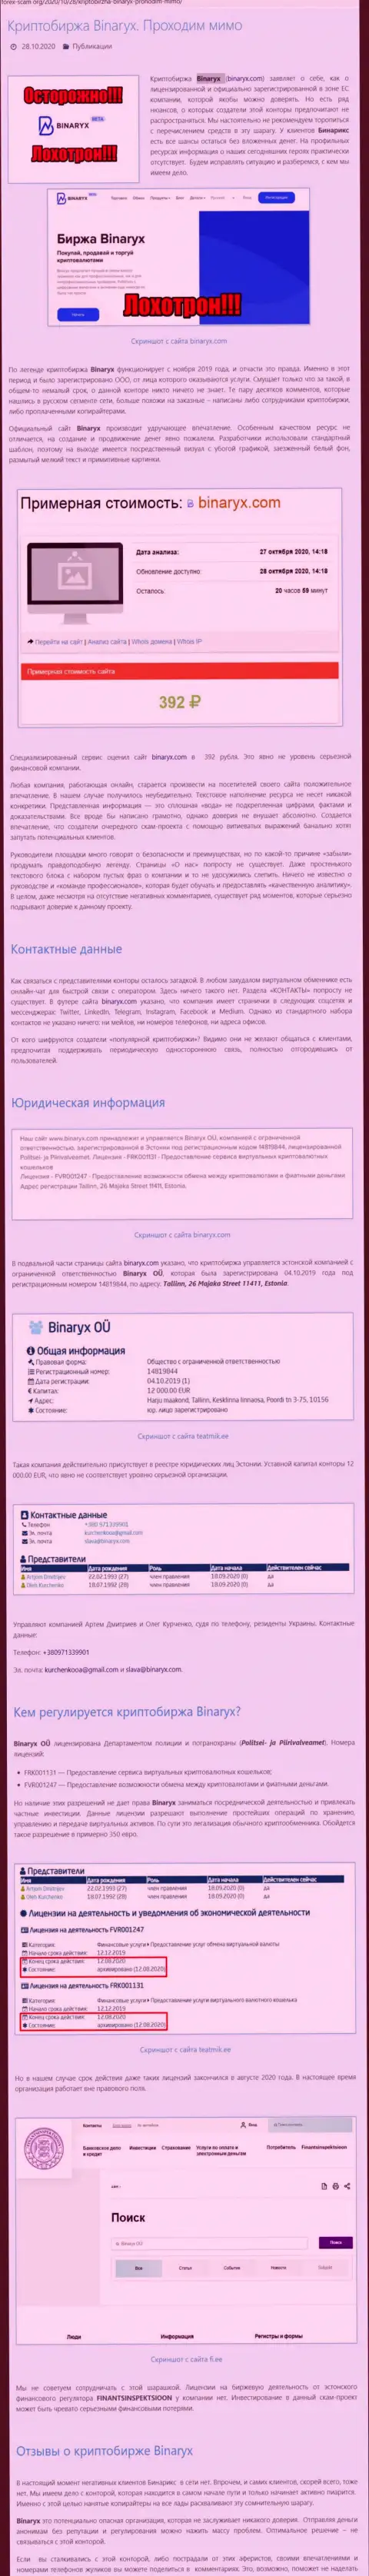 Binaryx Com - это МОШЕННИКИ !!! Воровство финансовых вложений гарантируют (обзор компании)